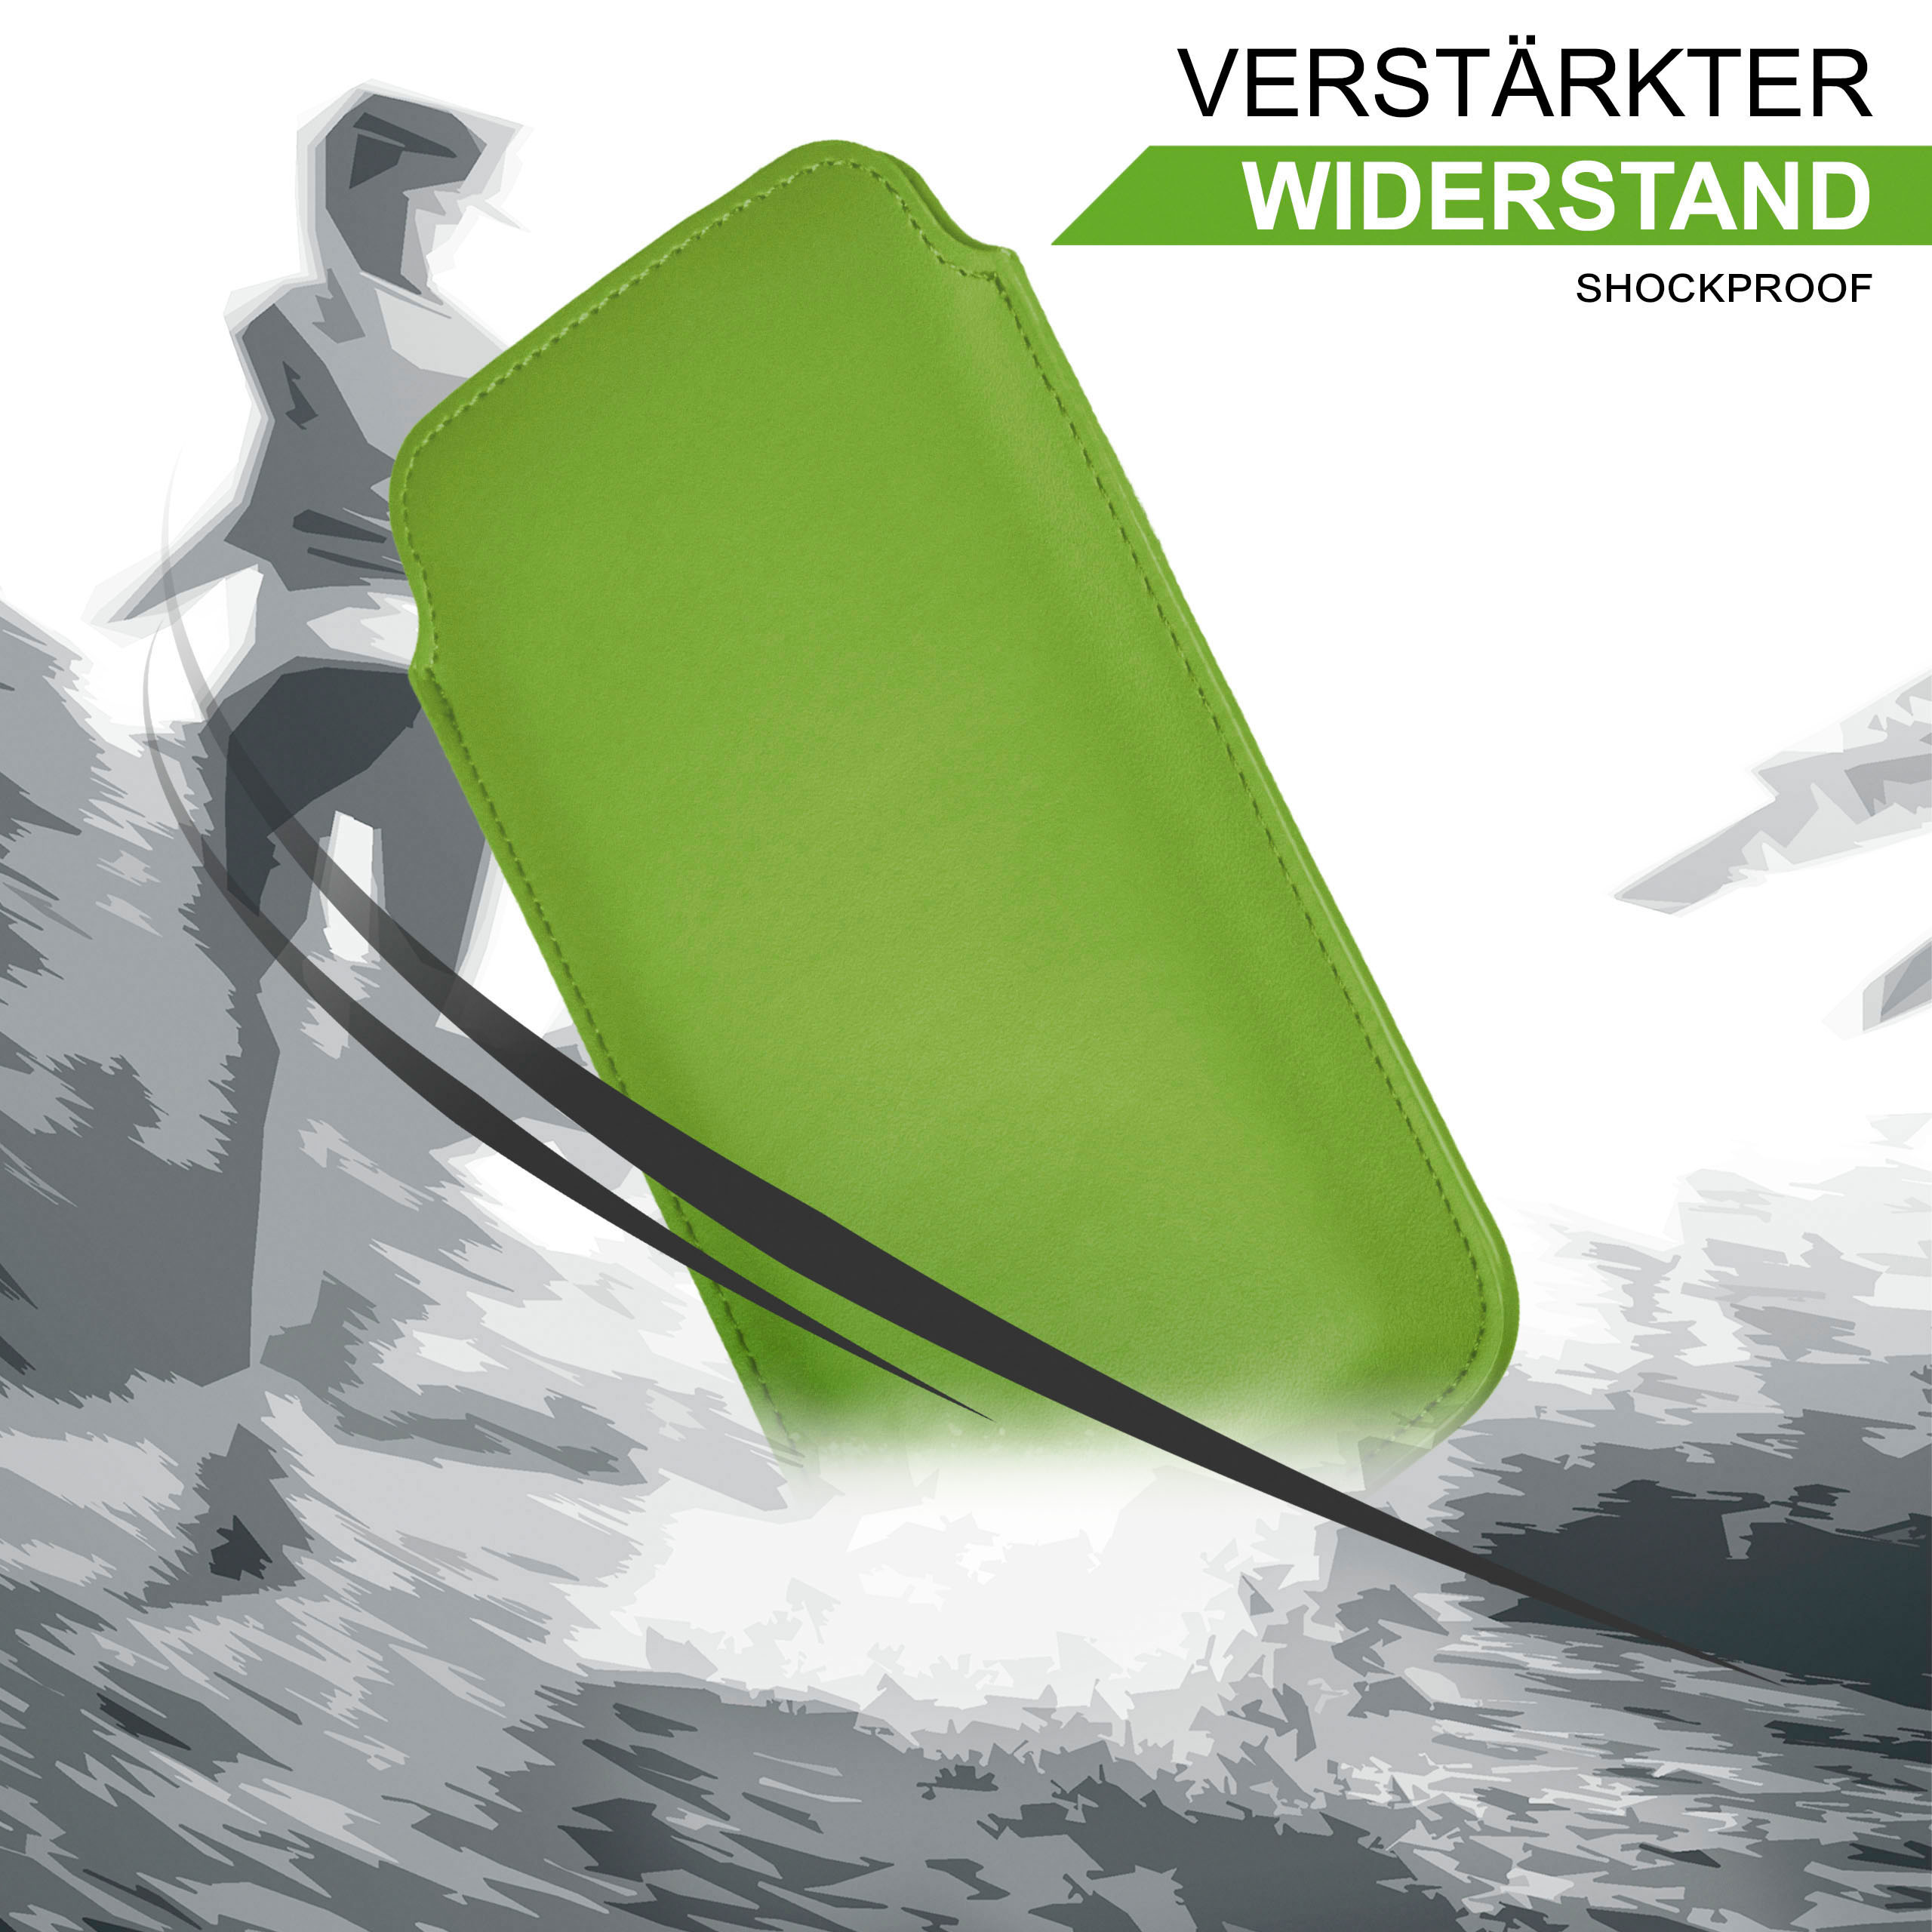 MOEX Slide Case, Full Basic, Emporia, Lime-Green Cover, Flip